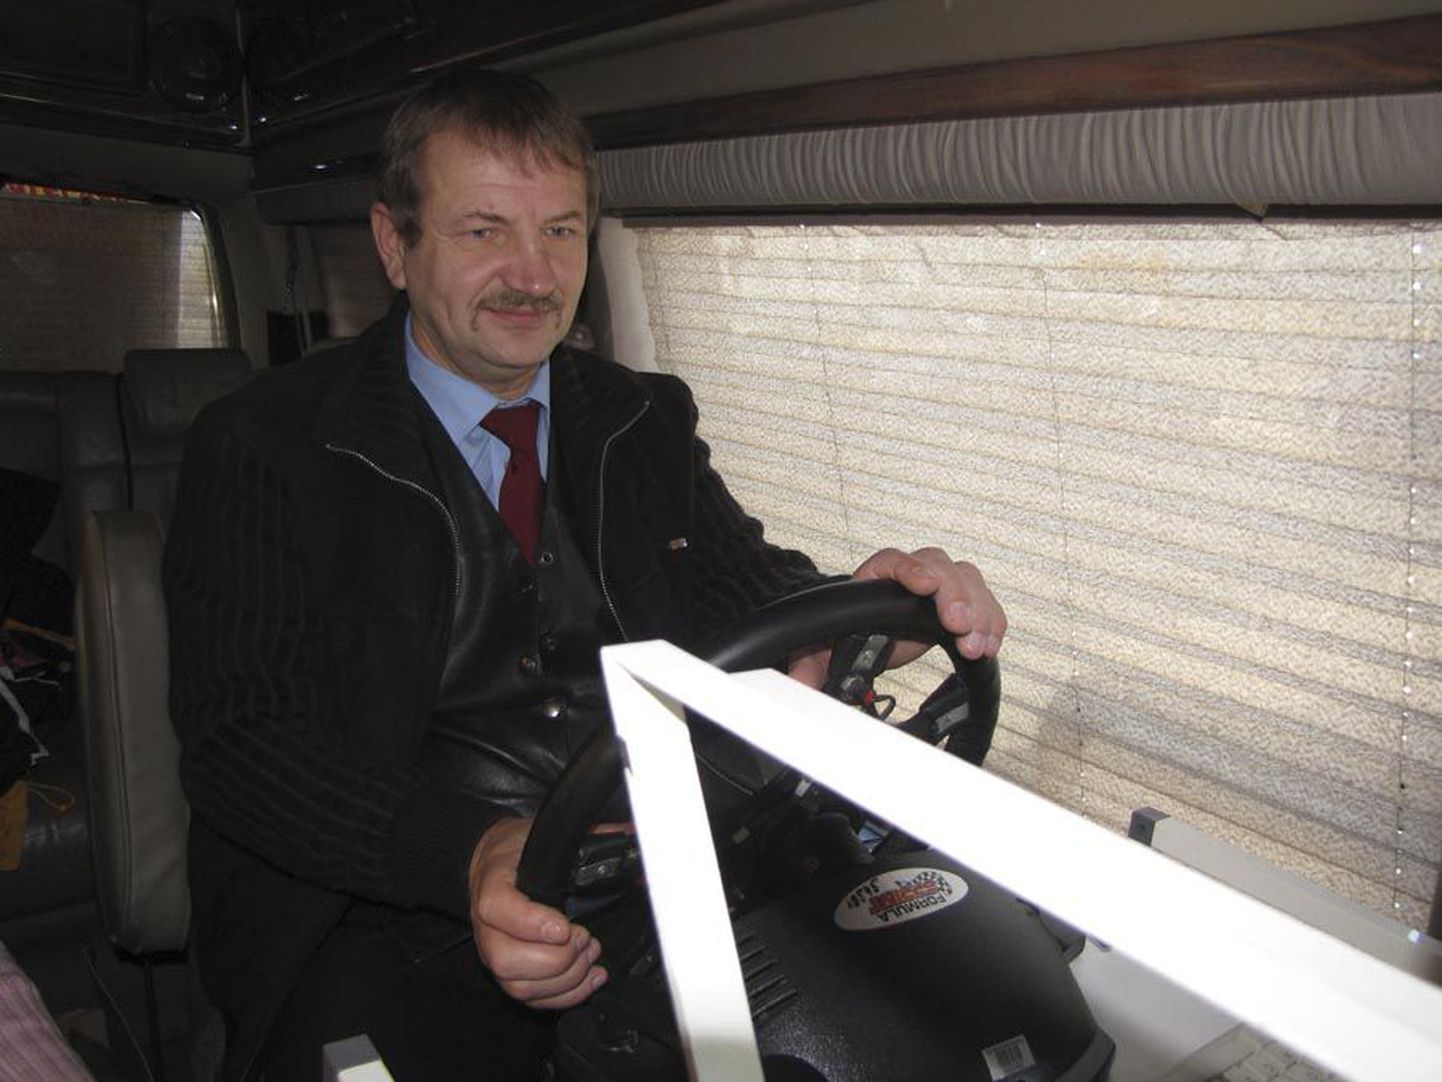 Unebussis kontrollis oma tähelepanuvõimet Atko bussijuht Harri Hanni, kes sai kirja Eesti parima tulemuse: tema reaktsioonikiirus on 0,05 sekundit. Korraldajad polnud nädala jooksul kohanud ühtegi teist nii osavat roolikeerajat.